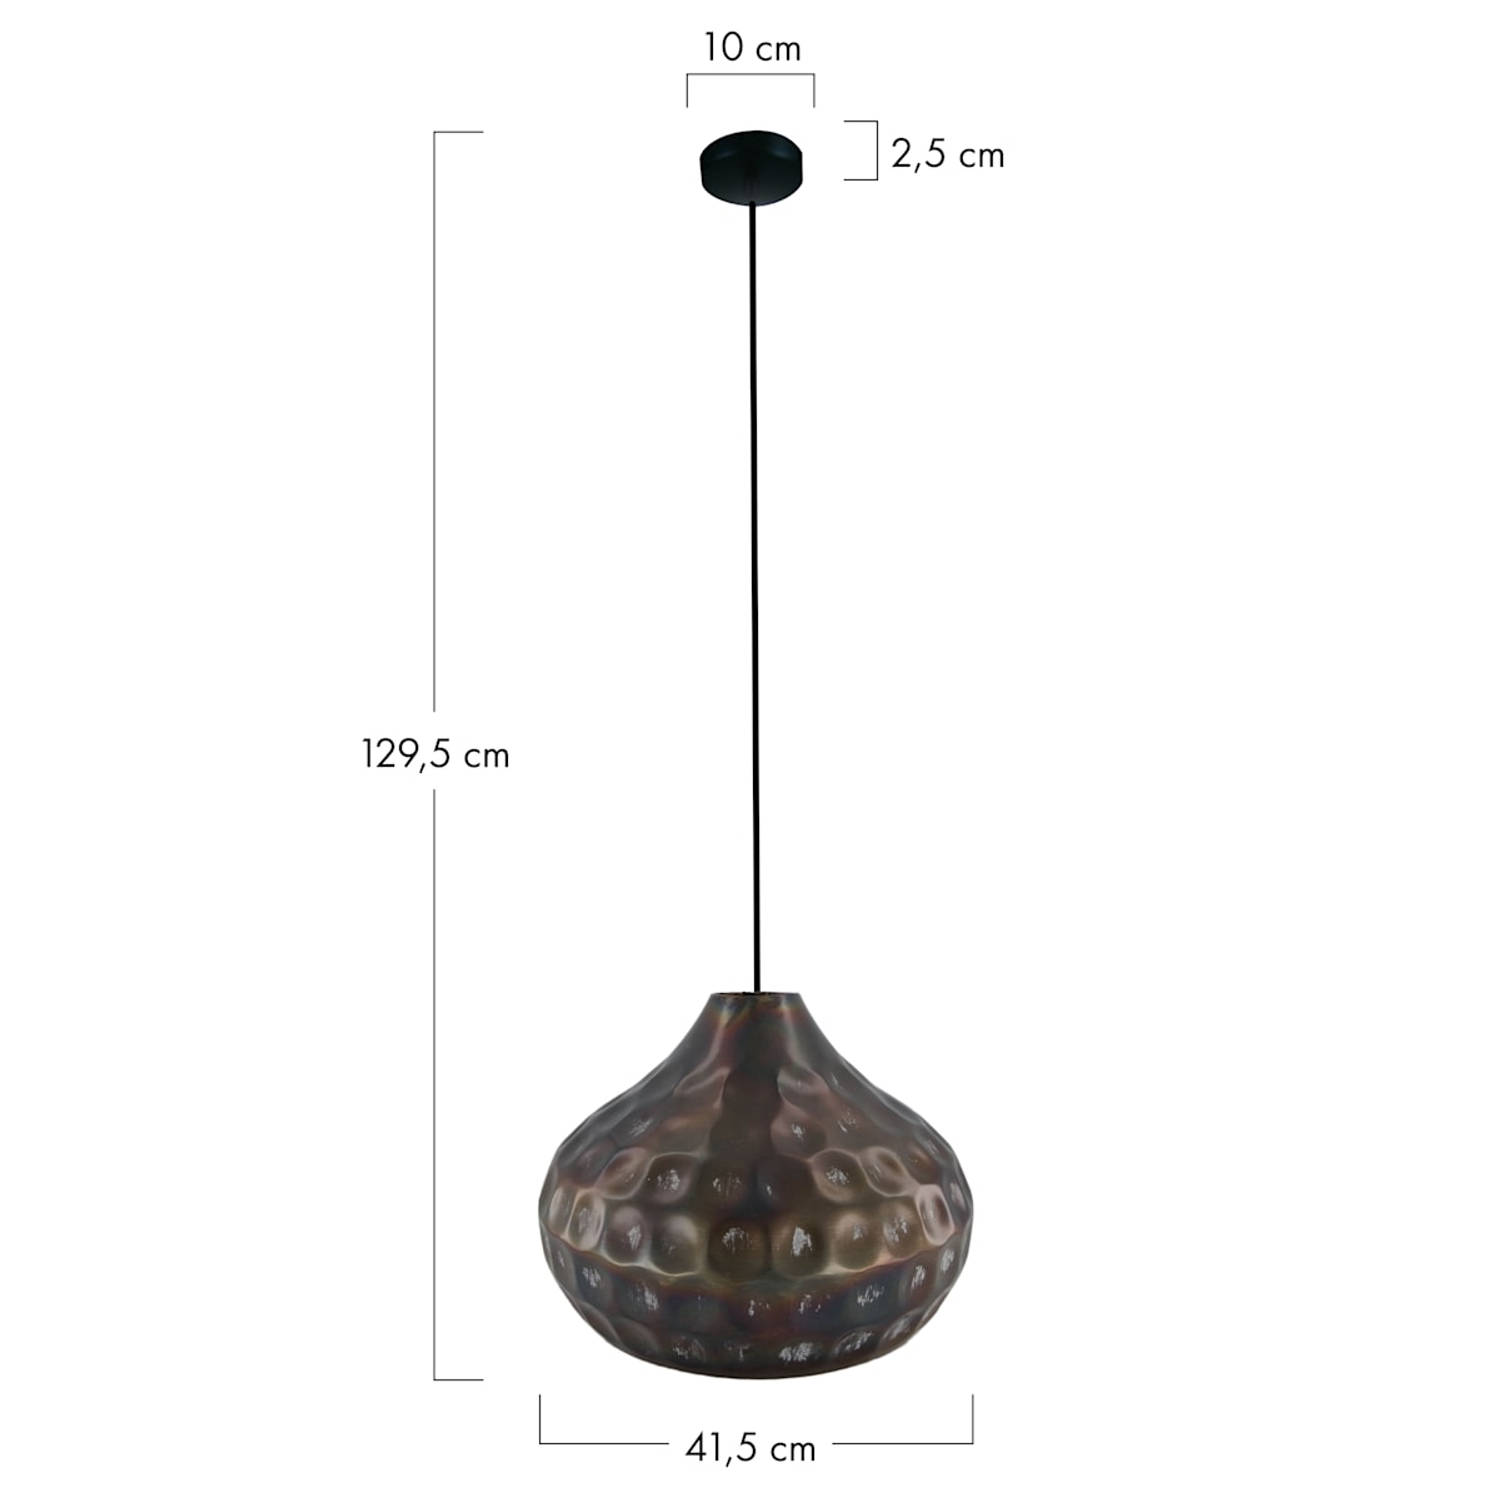 DKNC - Hanglamp Dante - Metaal - 41.5x41.5x29.5cm - Zwart